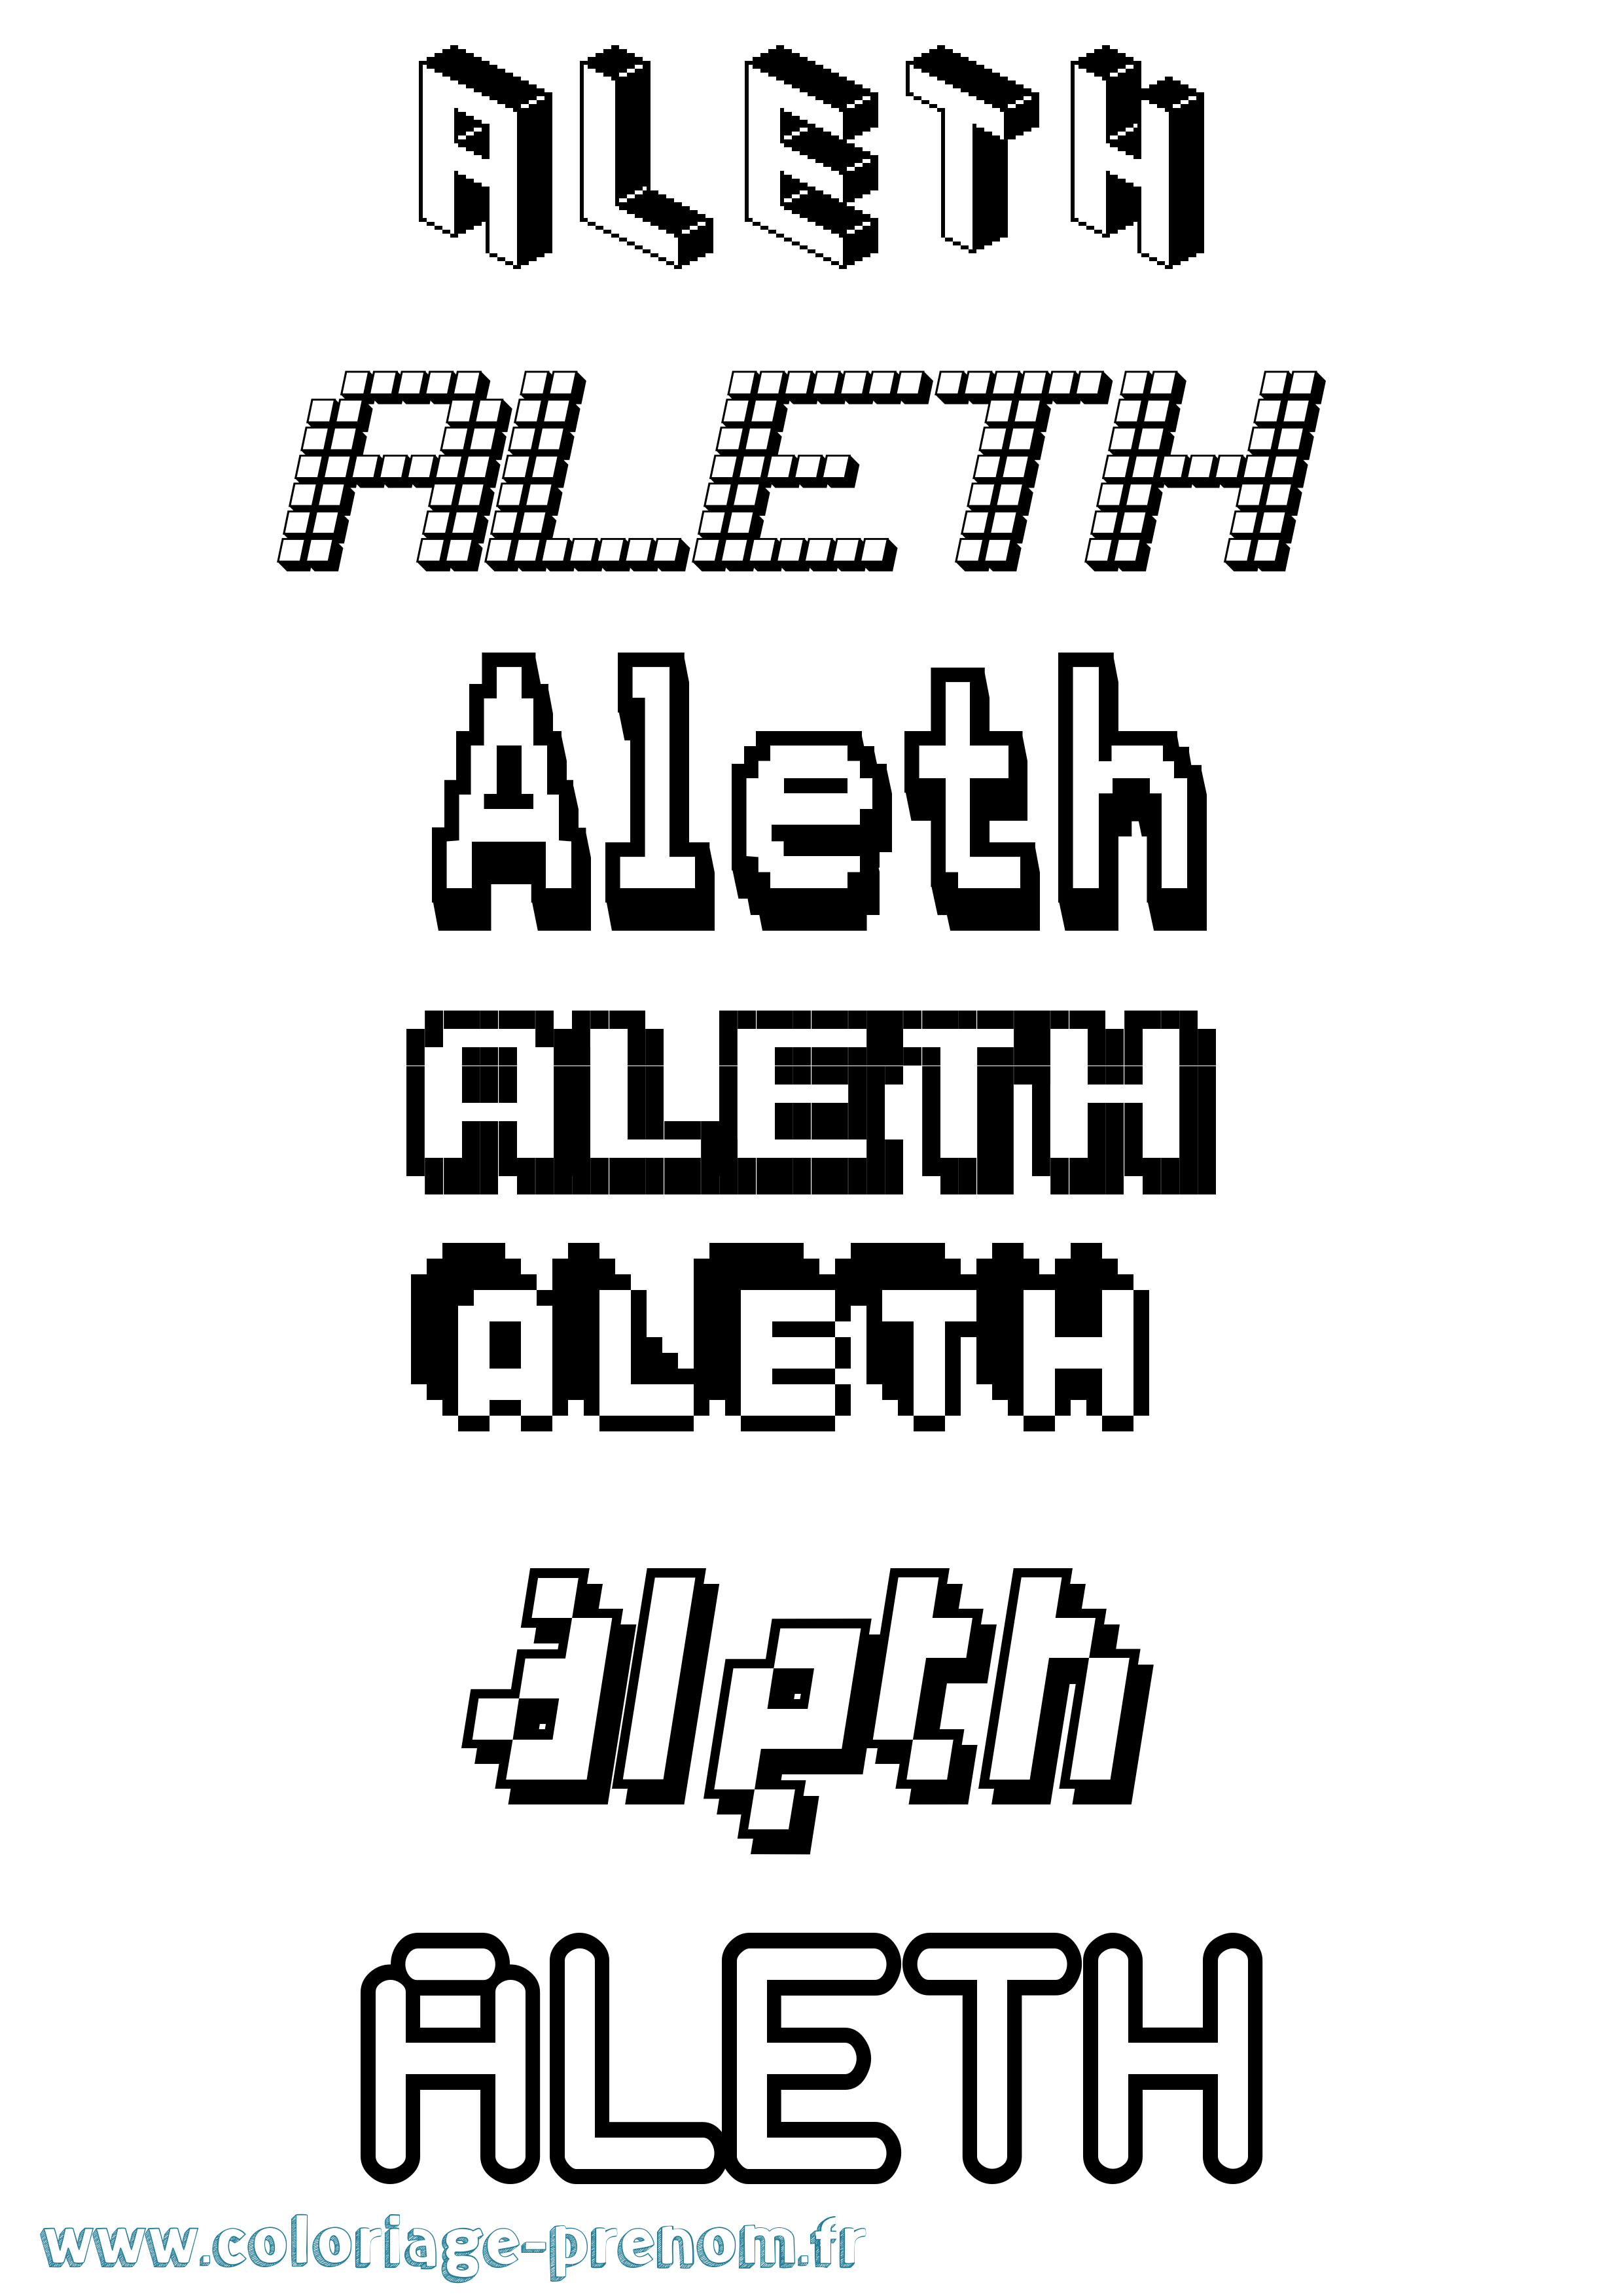 Coloriage prénom Aleth Pixel